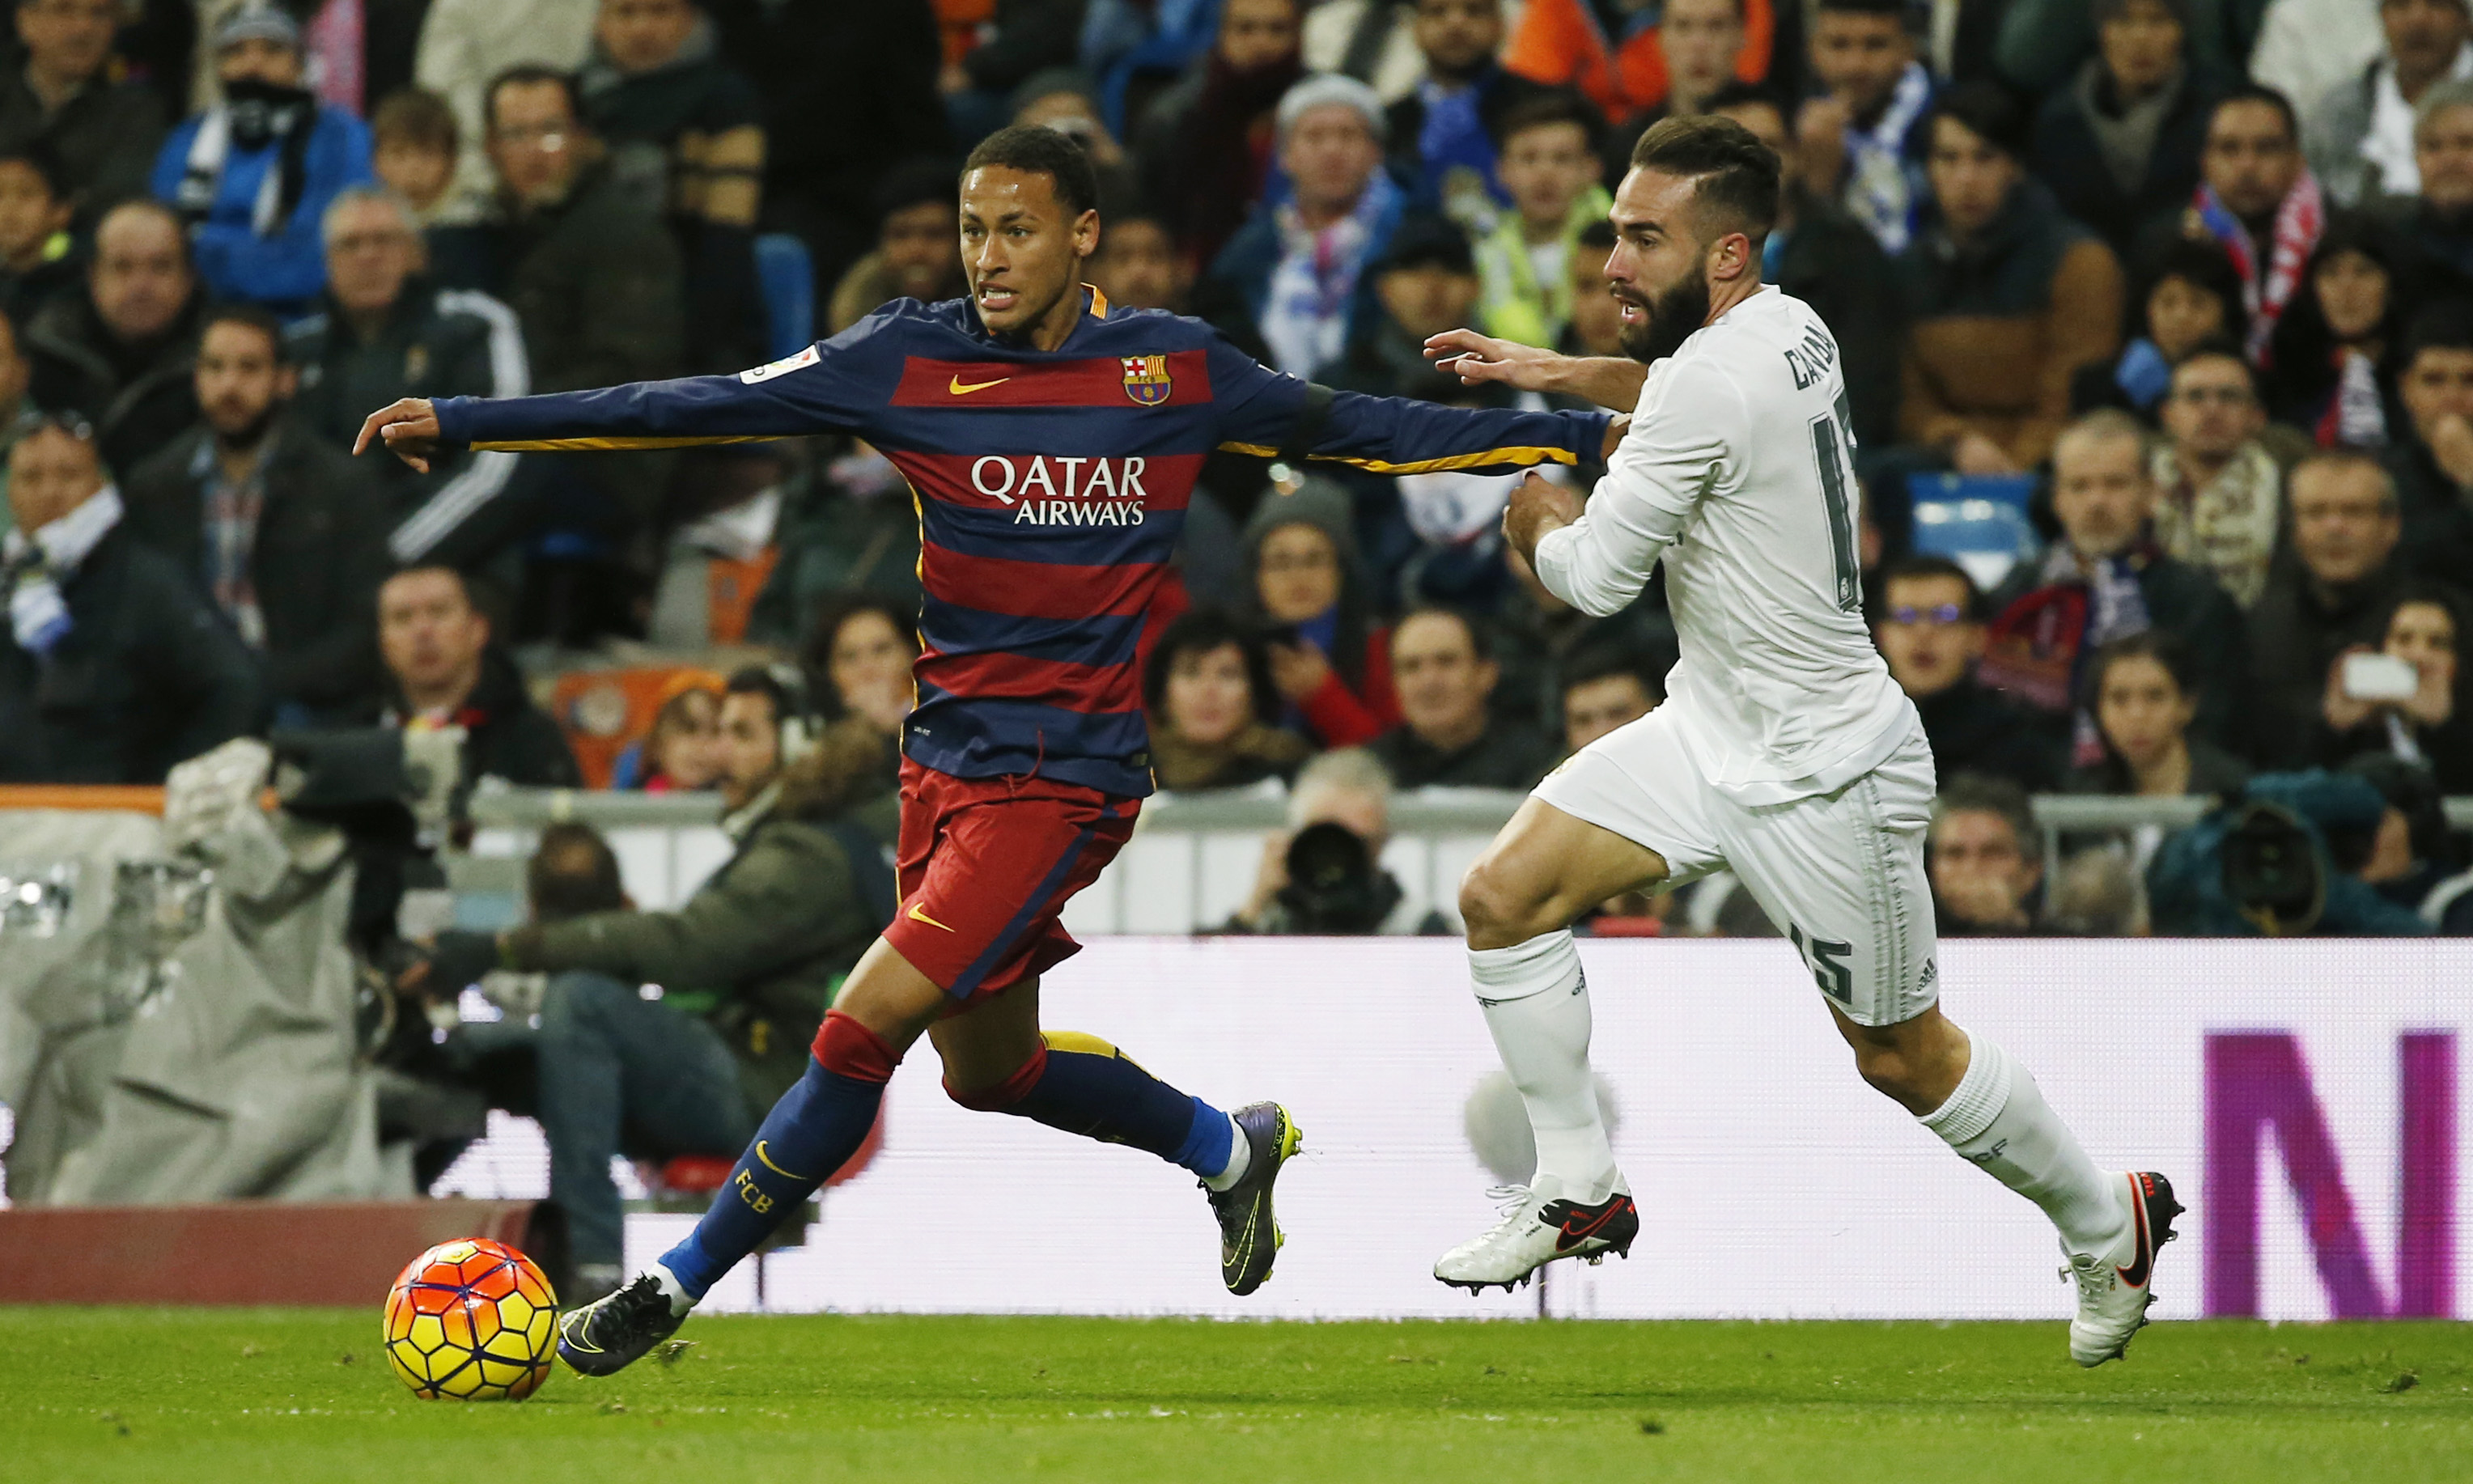 Barcelona's Neymar in action with Real Madrid's Dani Carvajal during La Liga game at Santiago Bernabeu on November 21, 2015. Photo: Reuters